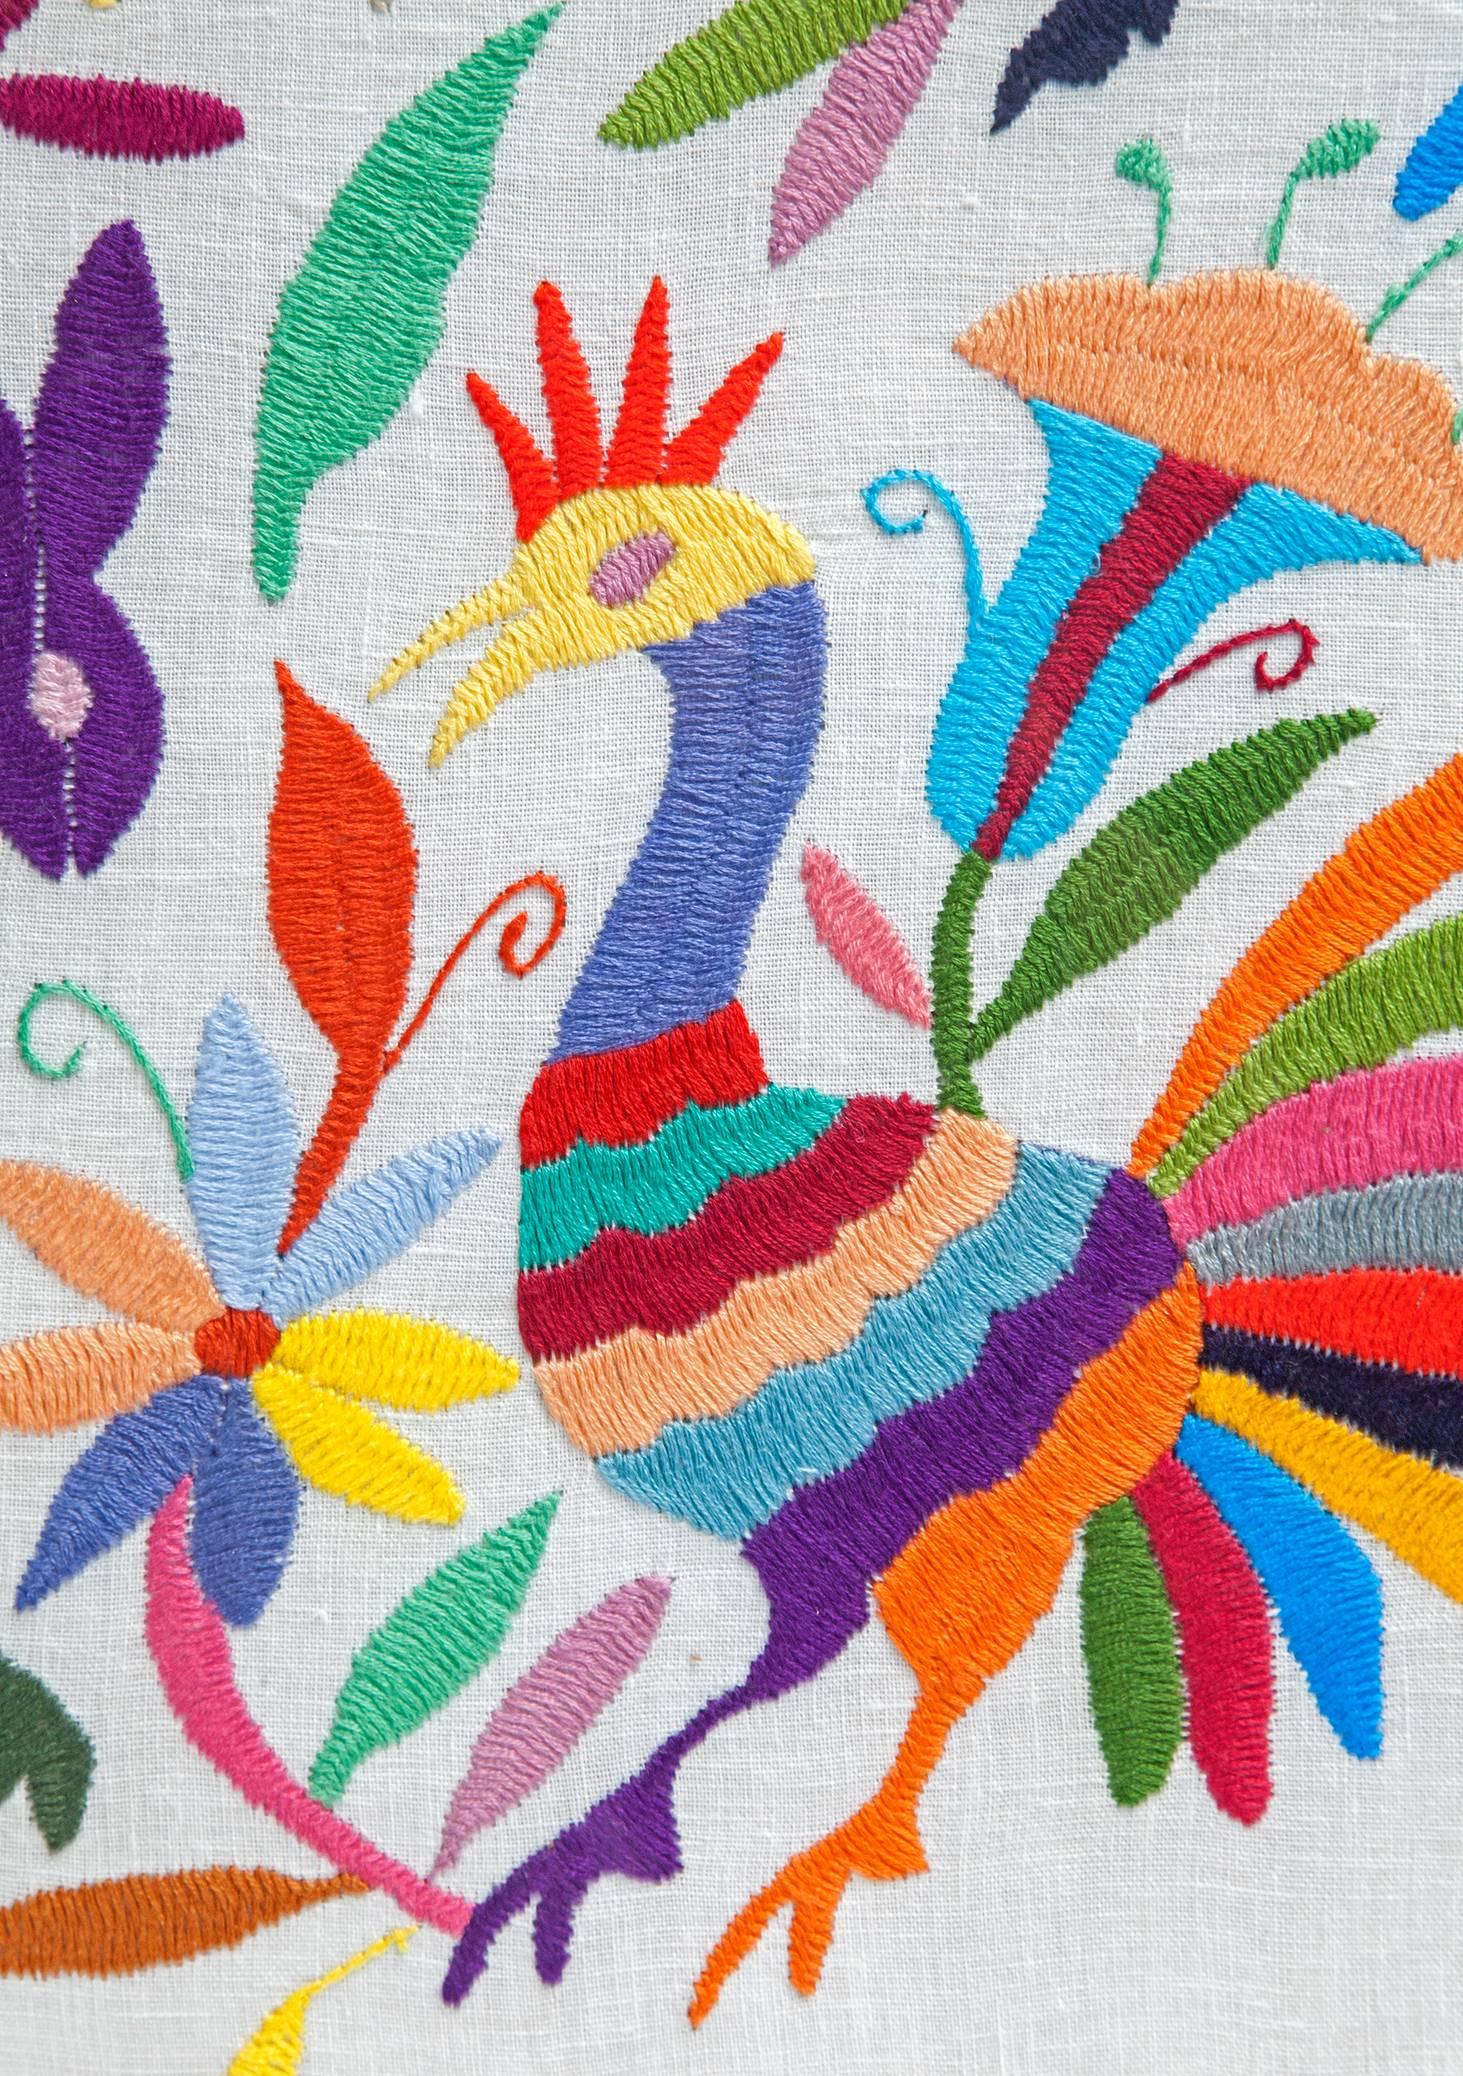 Tenango Otomi / Textiles Mexican Folk Art Embroidery Frame 1